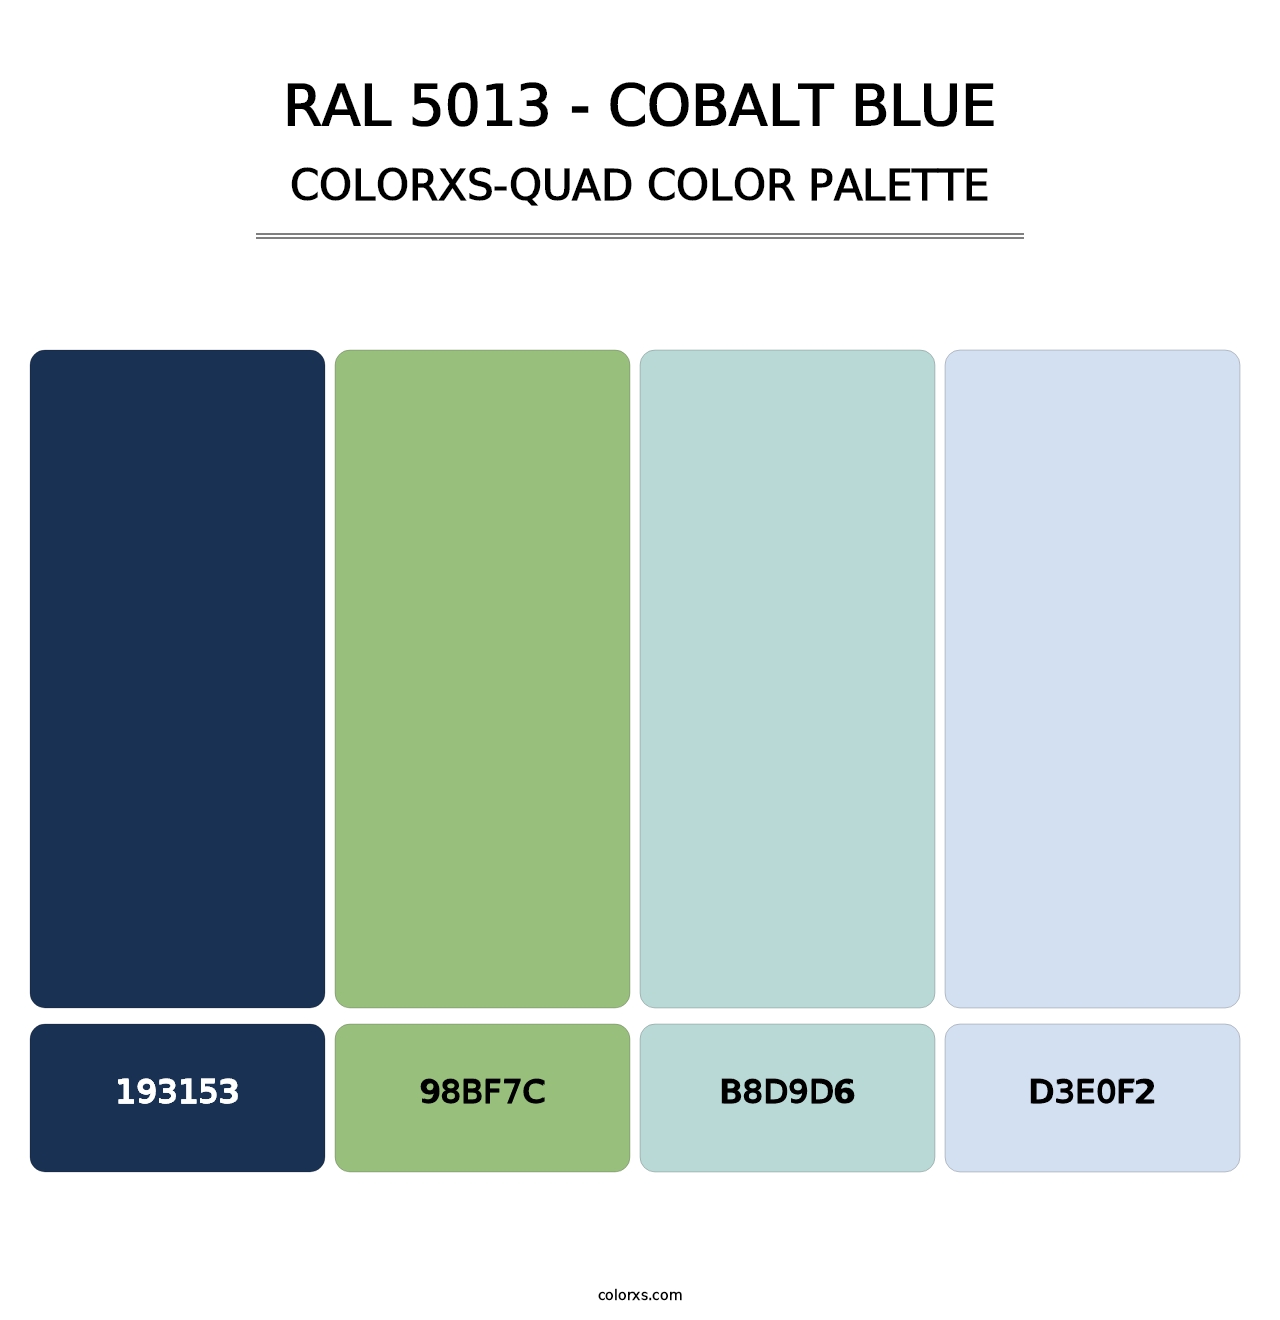 RAL 5013 - Cobalt Blue - Colorxs Quad Palette